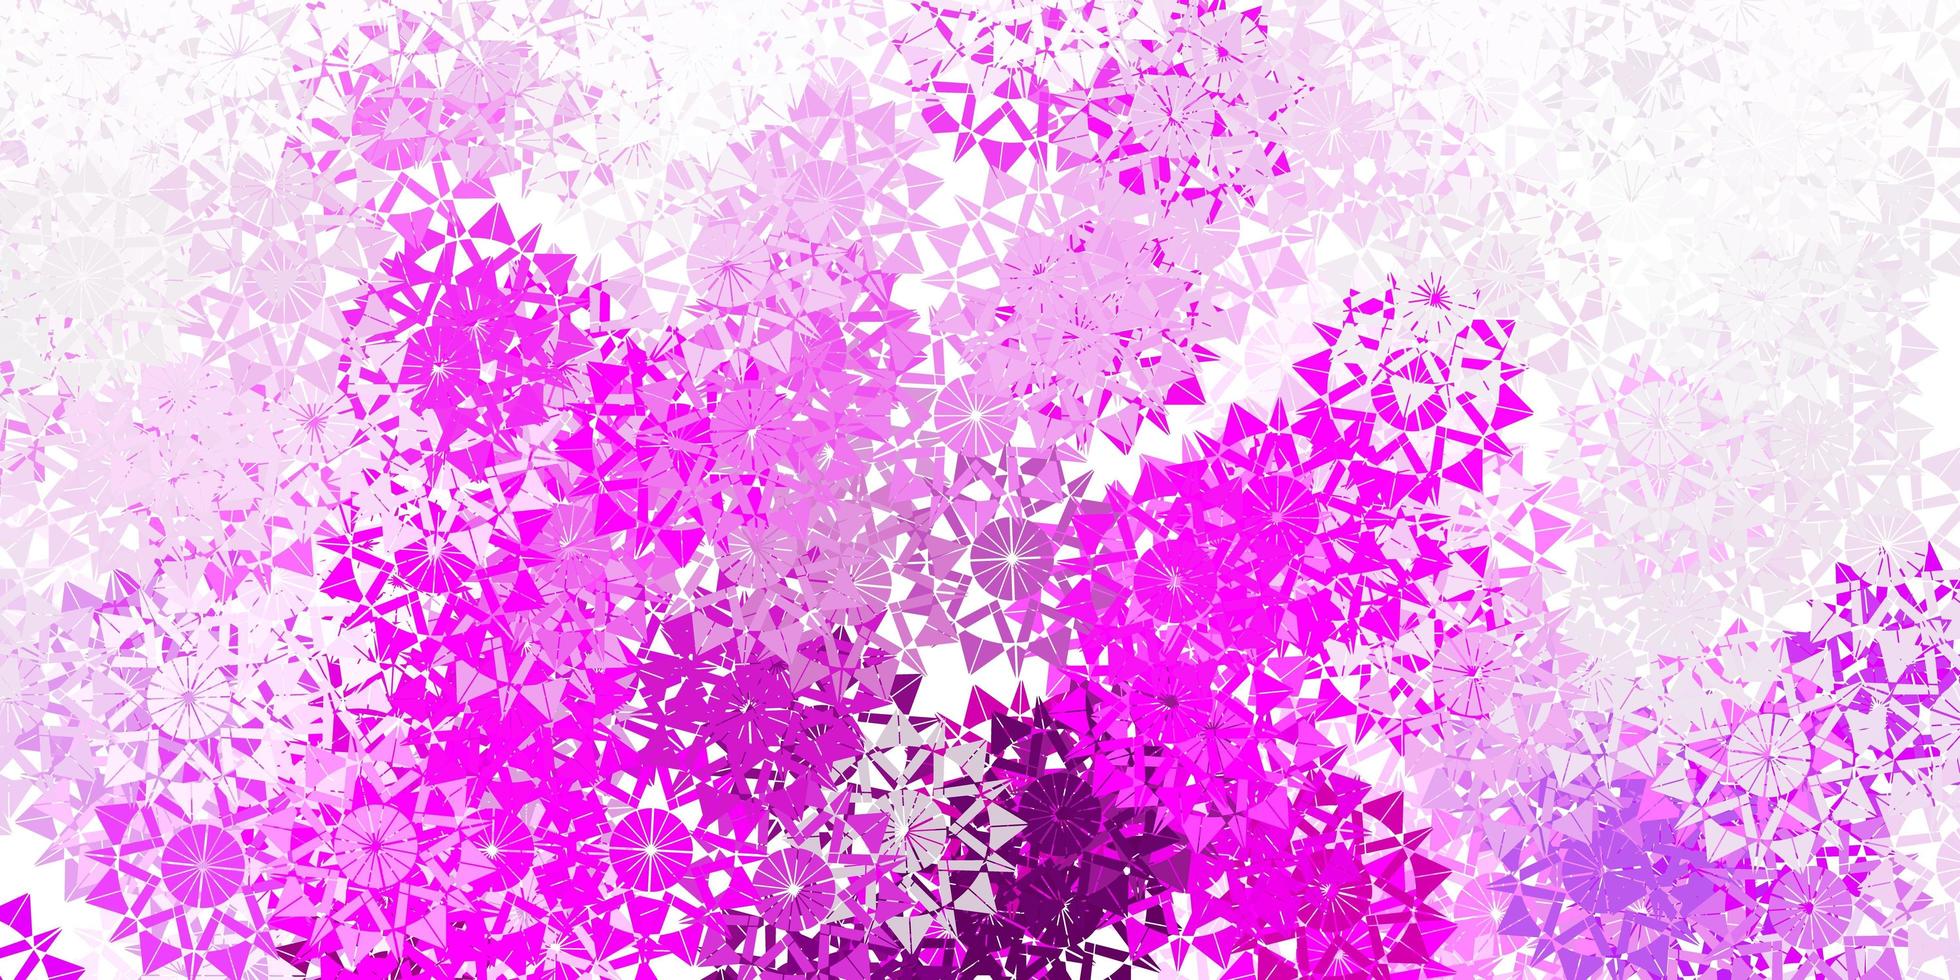 ljuslila, rosa vektorlayout med vackra snöflingor. vektor